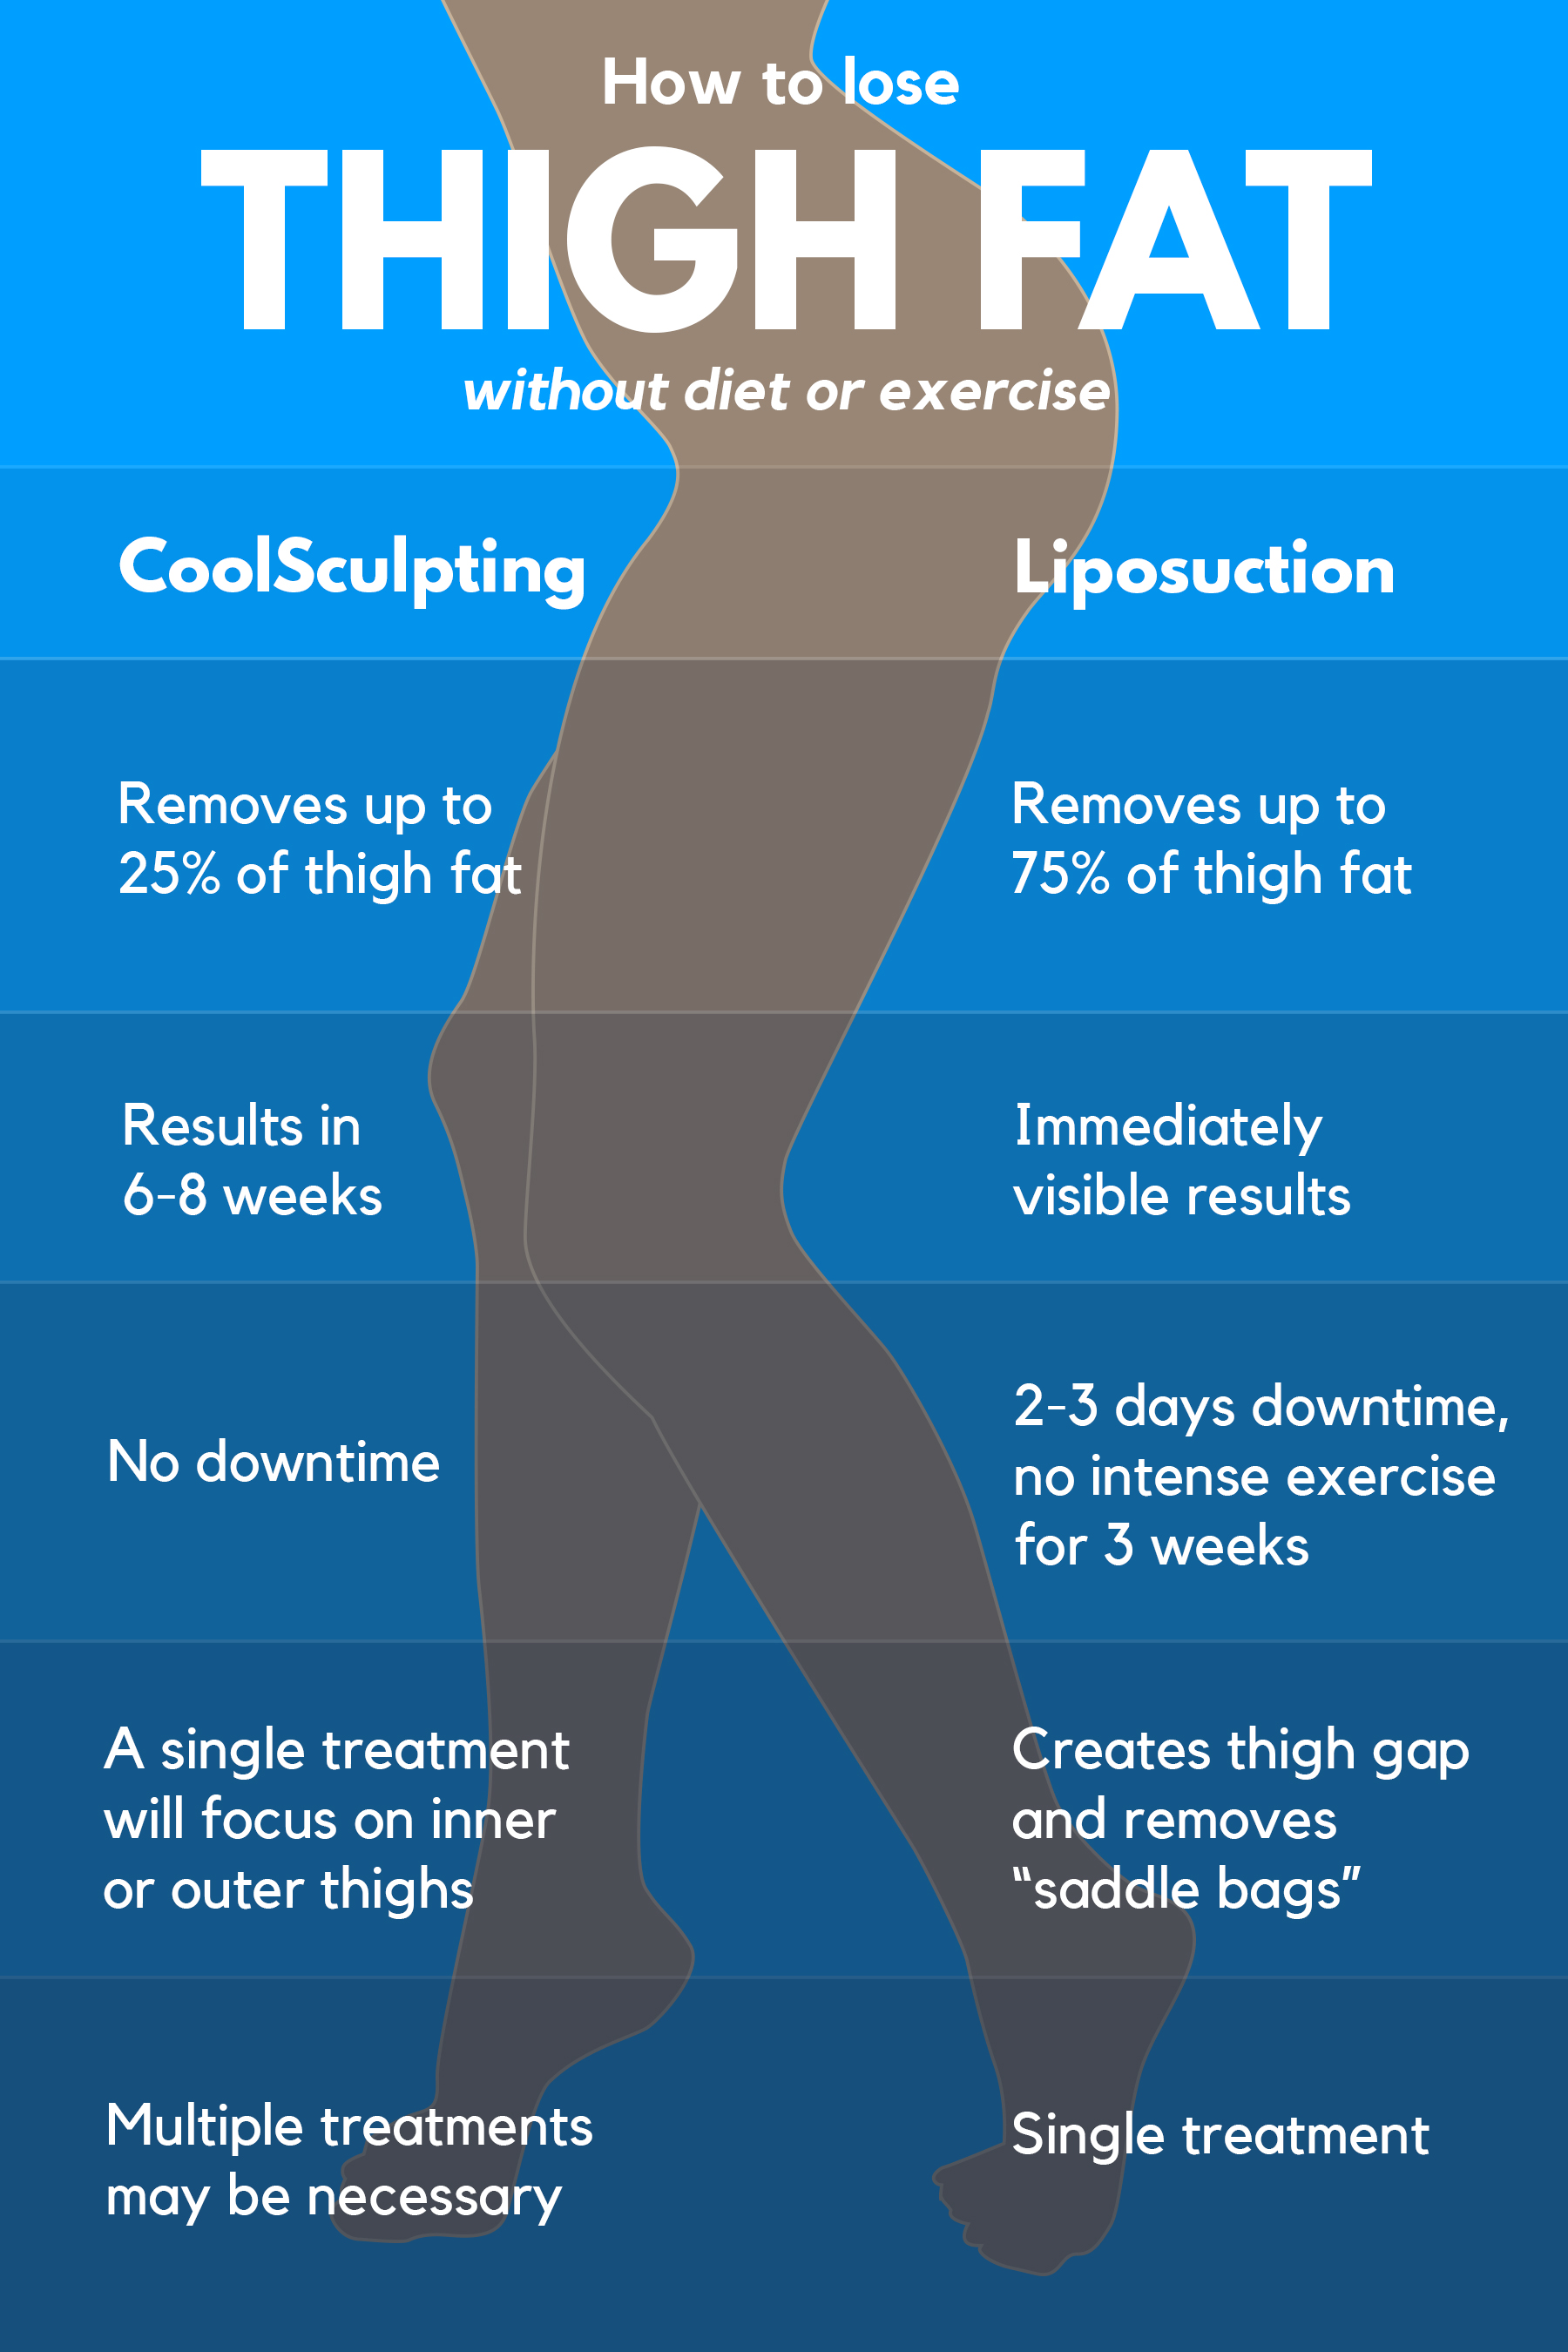 How To Lose Thigh Fat Lipo Vs Coolsculpting Houston Lipo Center 